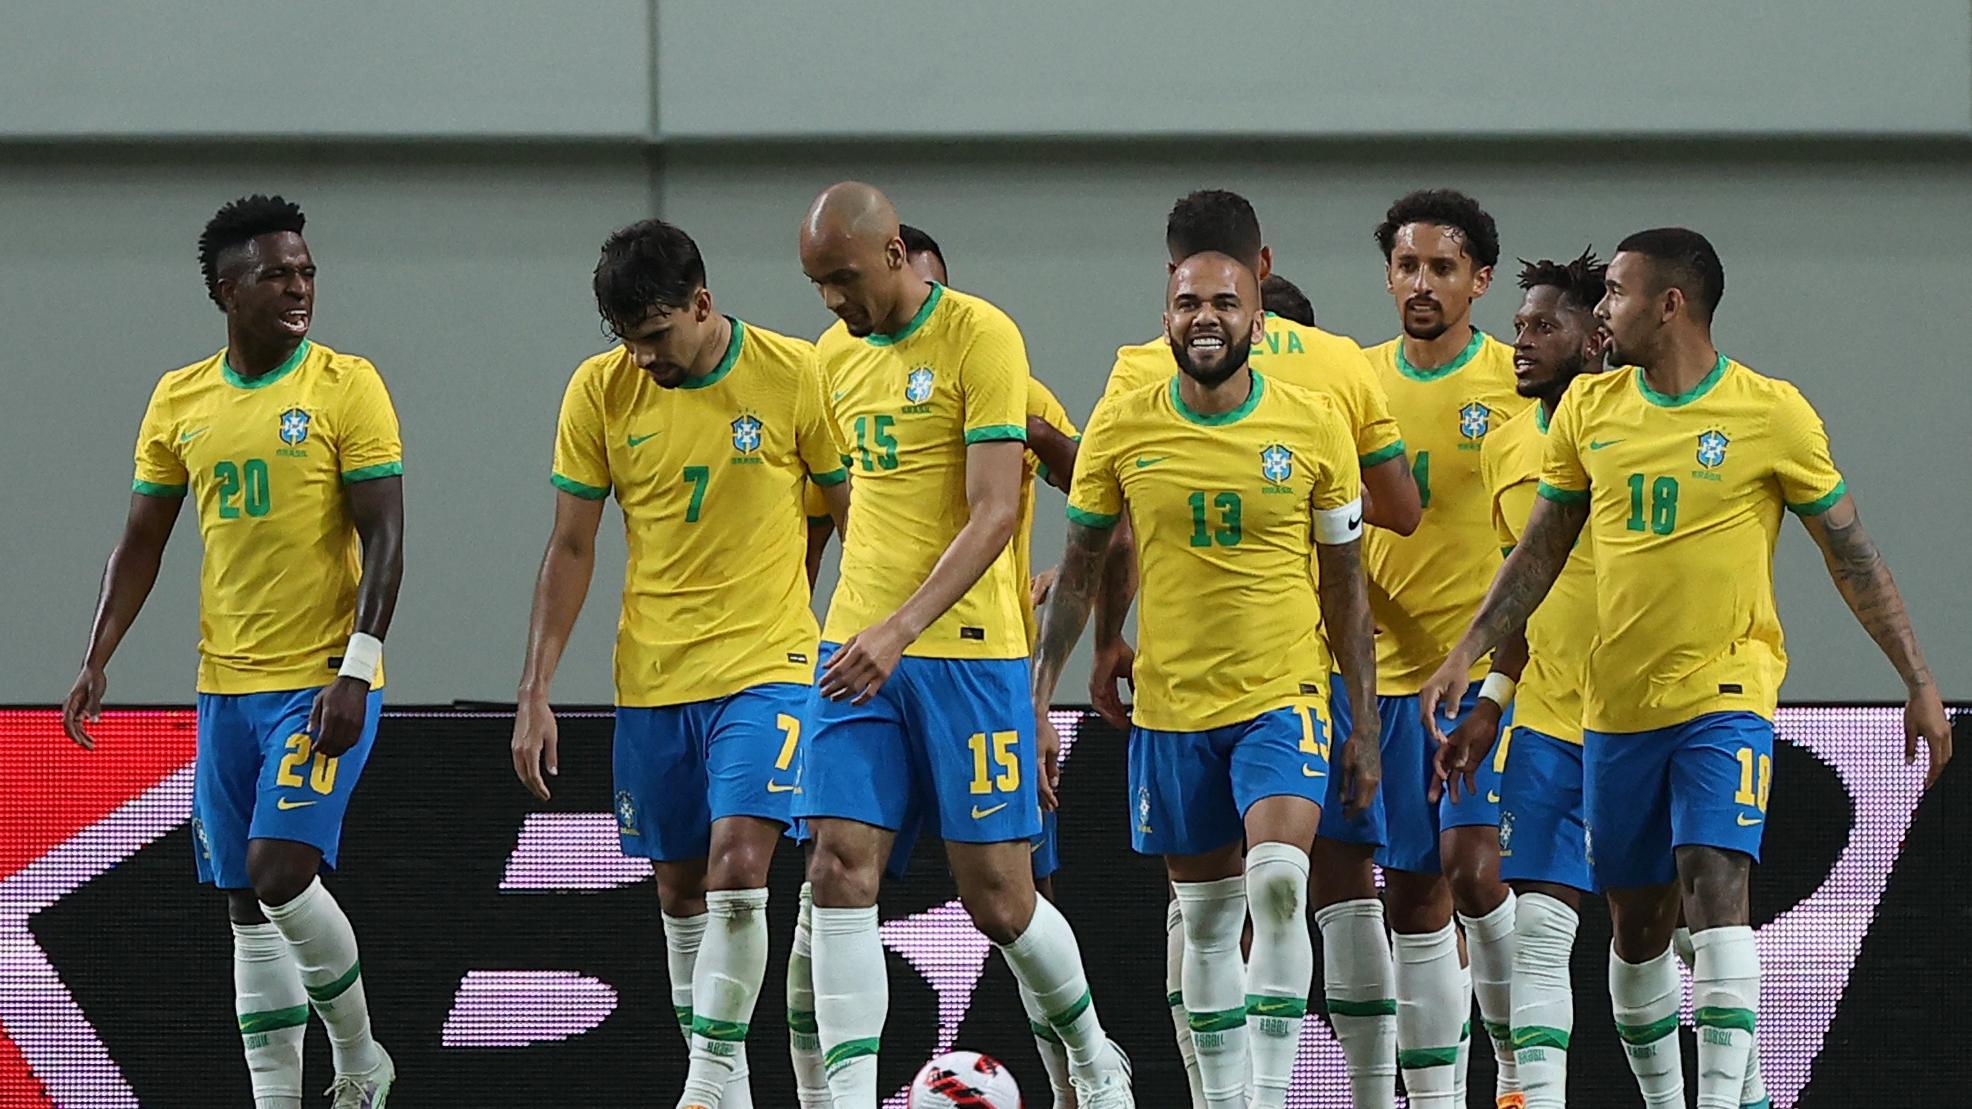 Nominácia Brazílie na MS vo futbale 2022 je známa | Šport.sk